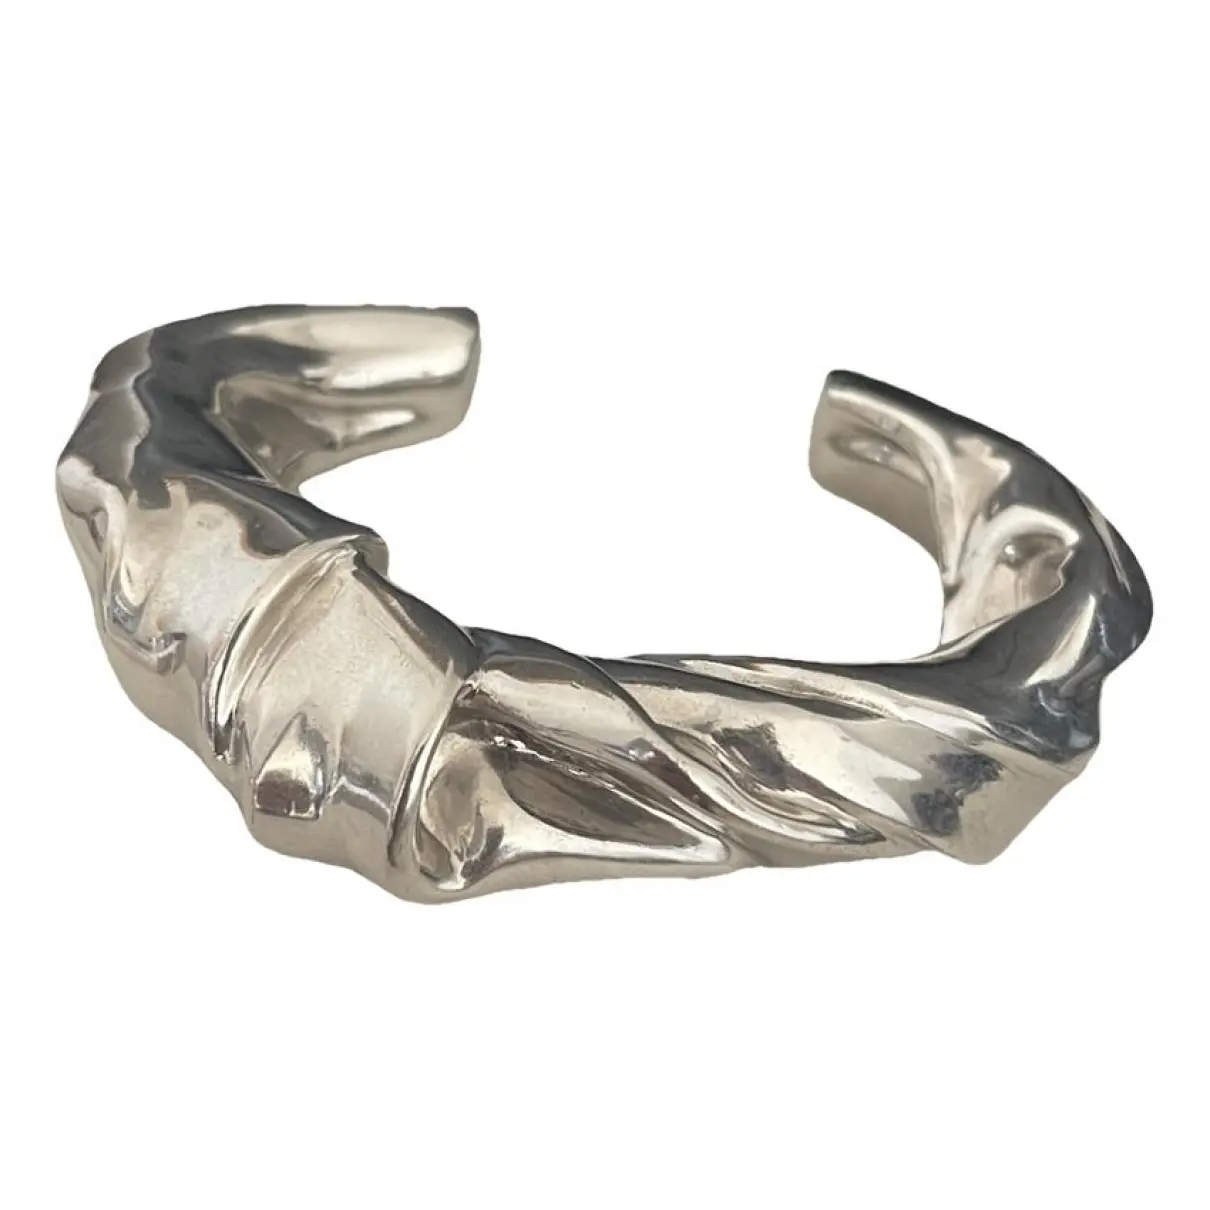 Twist silver bracelet